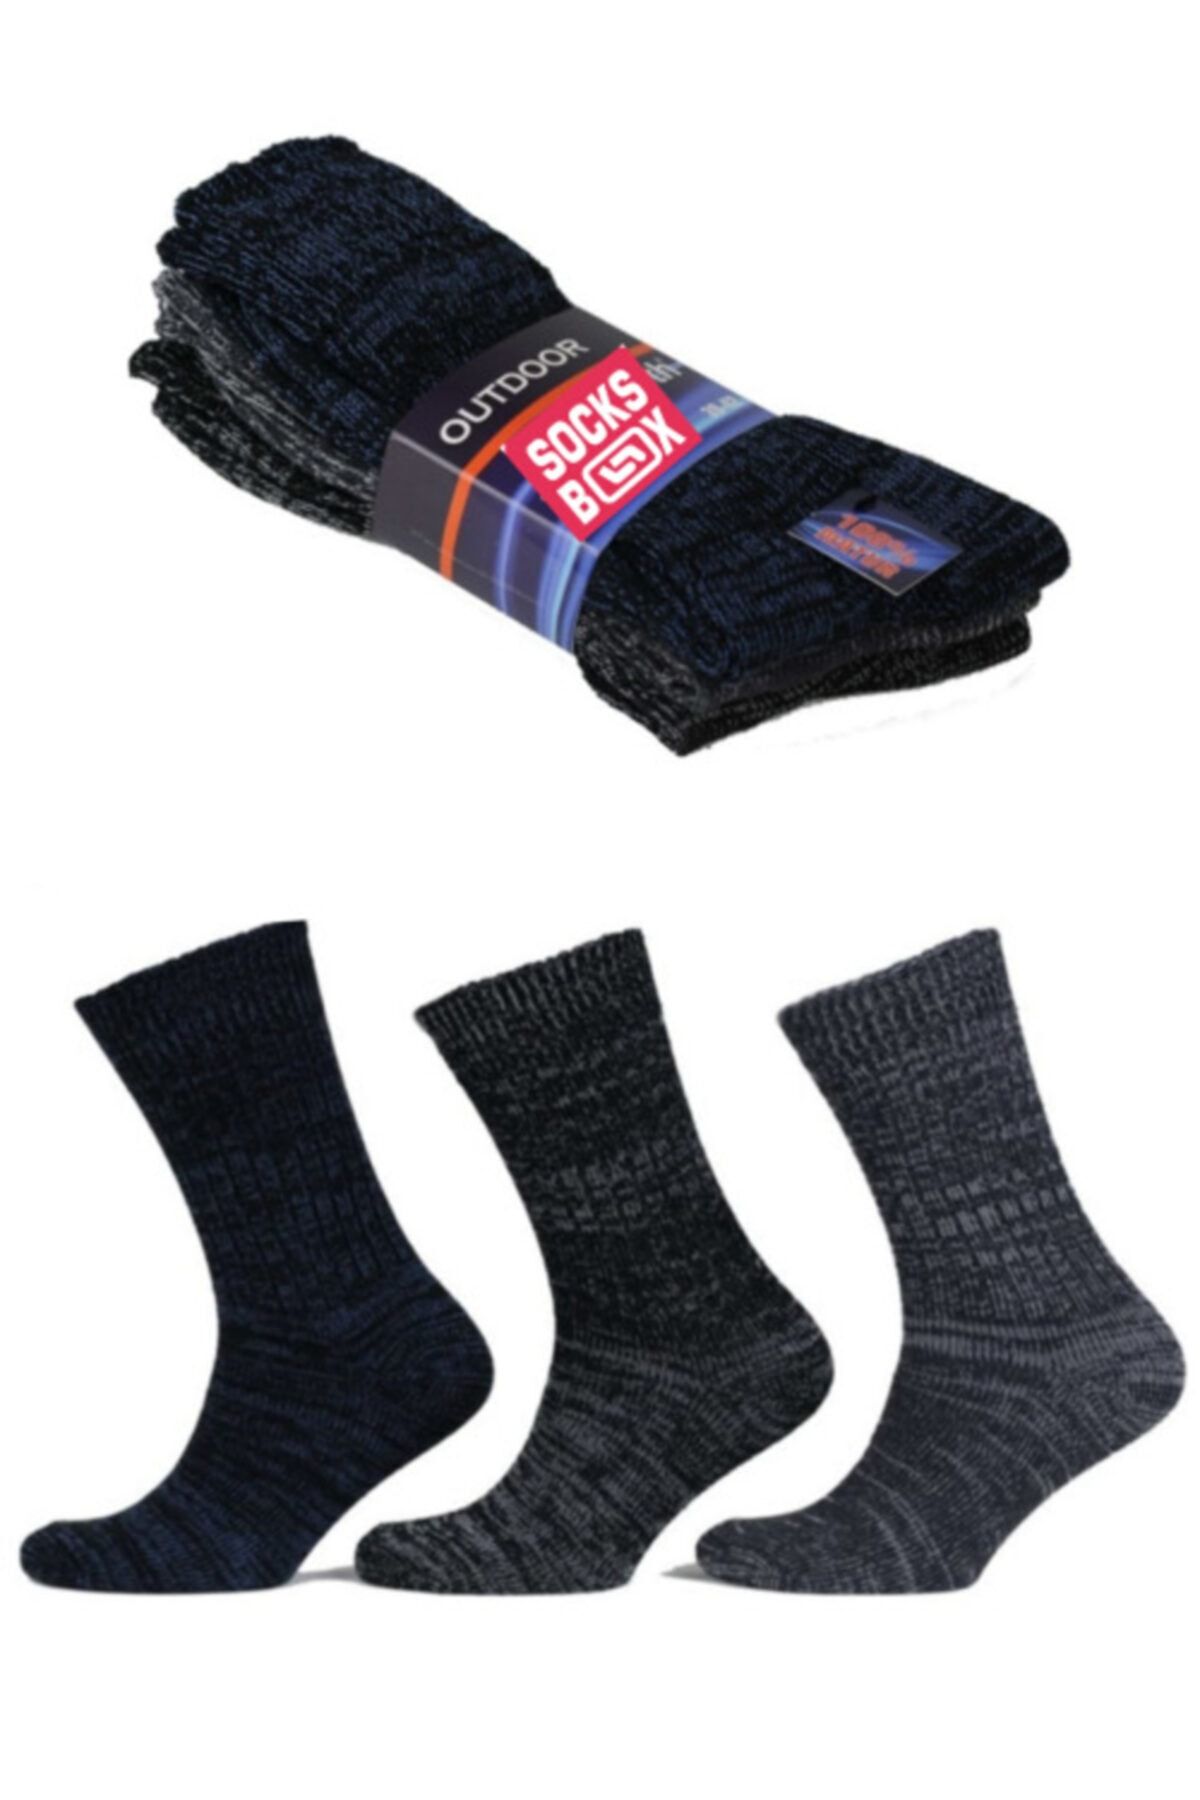 socksbox Erkek Siyah Outdoor Termal Etkili Kışlık Jeans Çorap 3 Adet